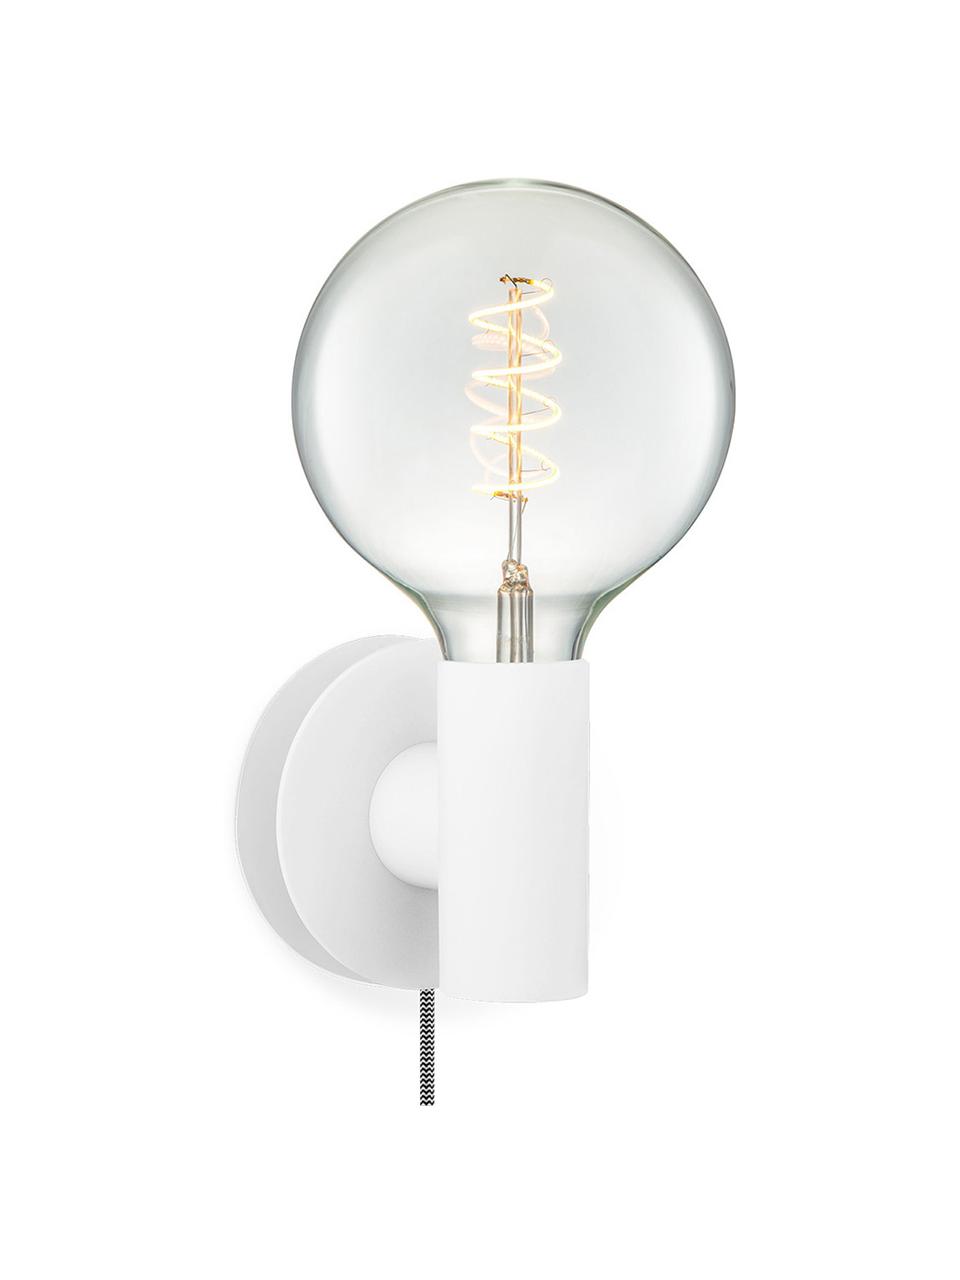 Petite applique ampoule nue avec prise secteur Wally, Blanc, noir-blanc, larg. 12 x haut. 12 cm